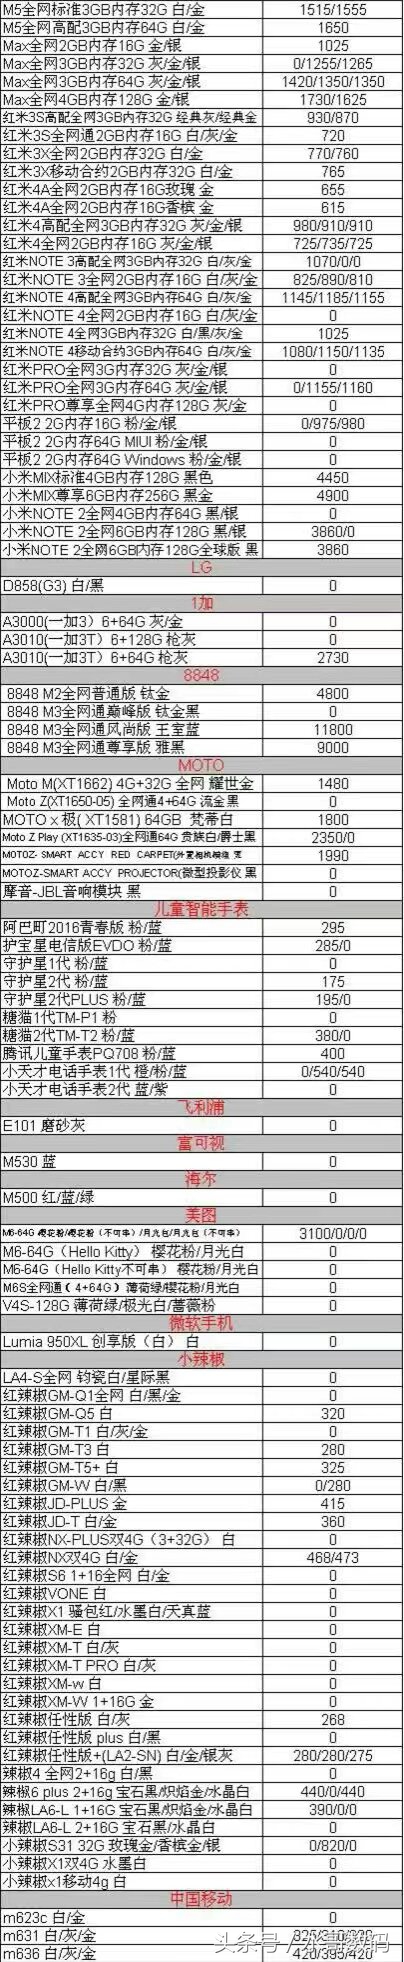 一月初中国发行手机报价，苹果7港行金黄128G原封报5555；